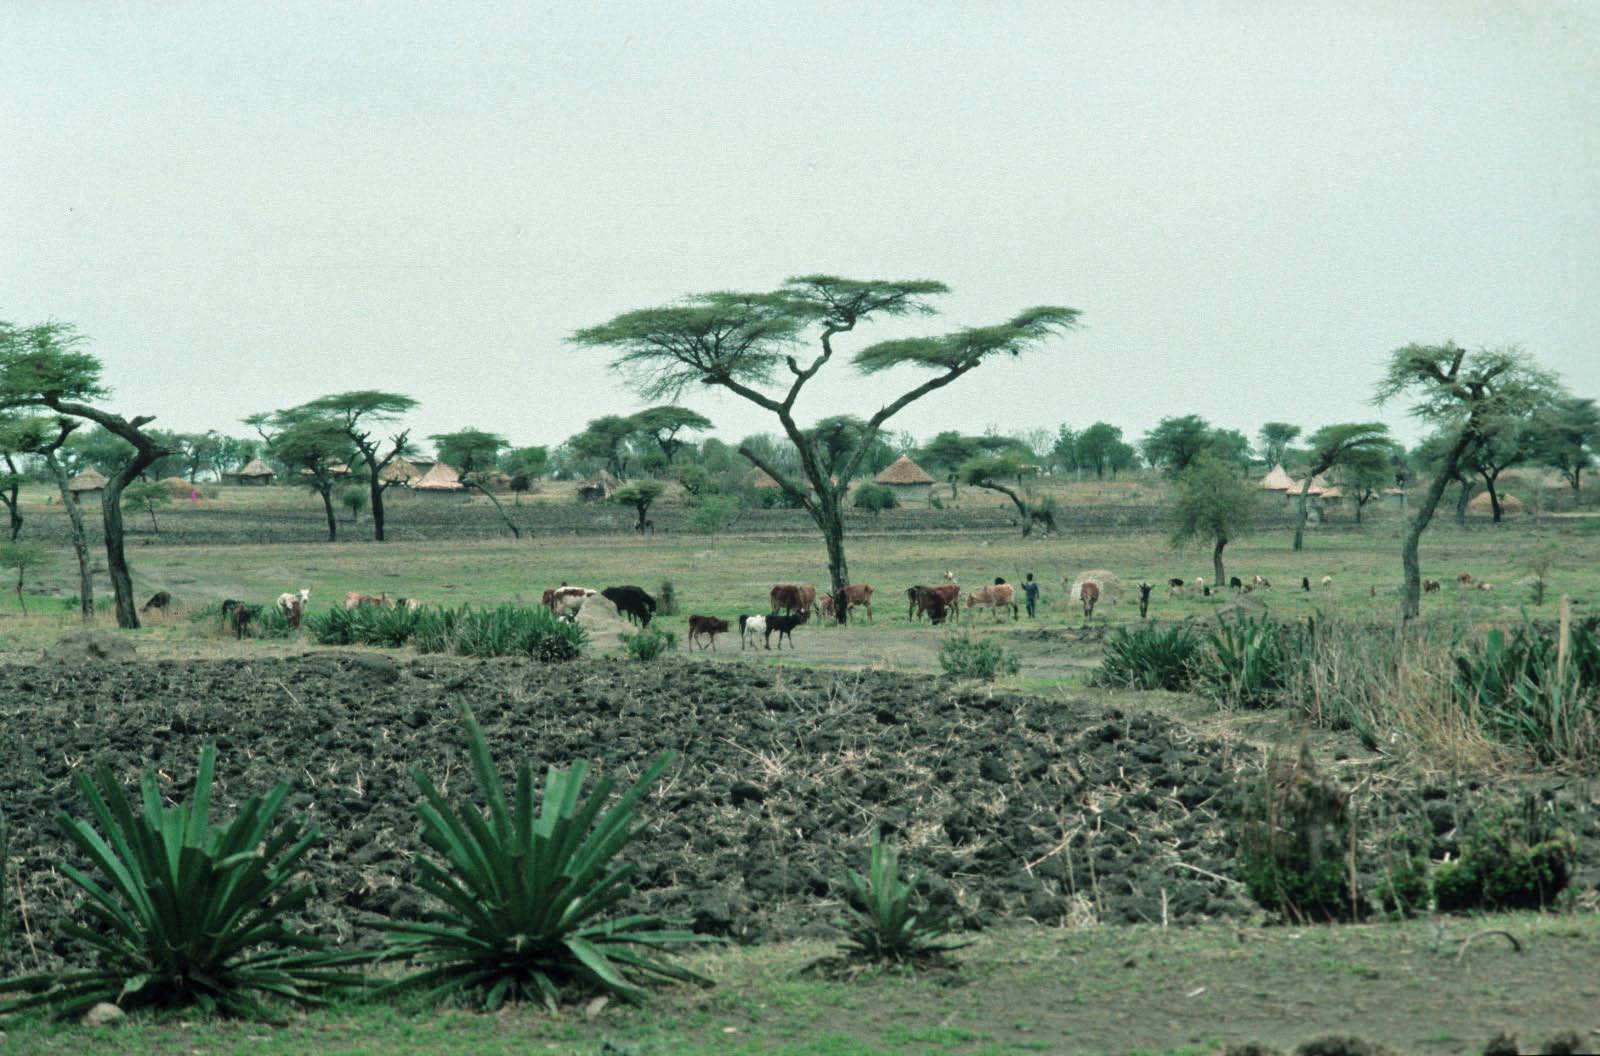 Savane de l'Afrique de l'Est (Ethiopie)